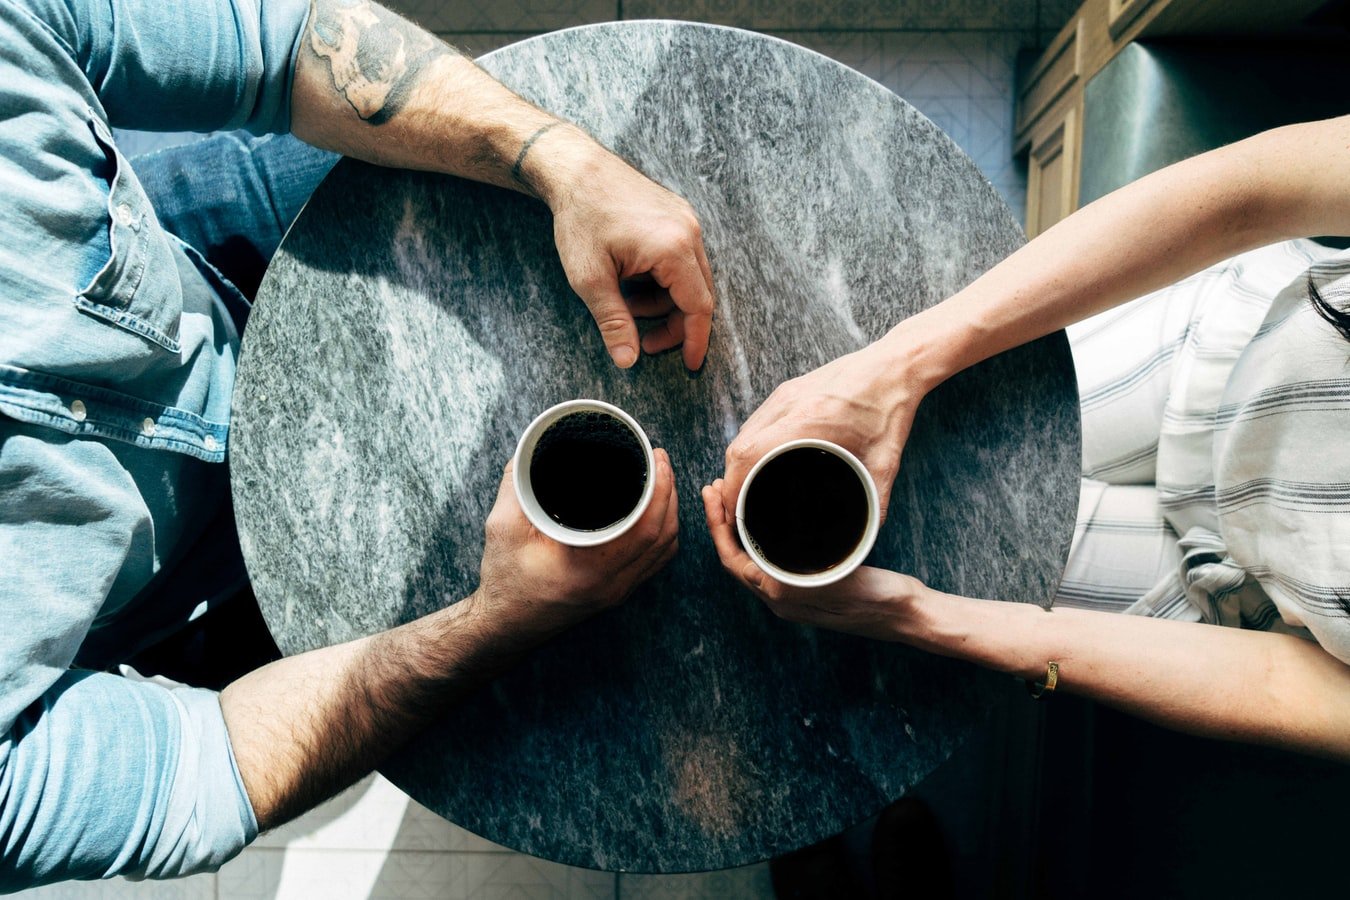 Mann und Frau sitzen mit Kaffe an einem Tisch | Quelle: Unsplash